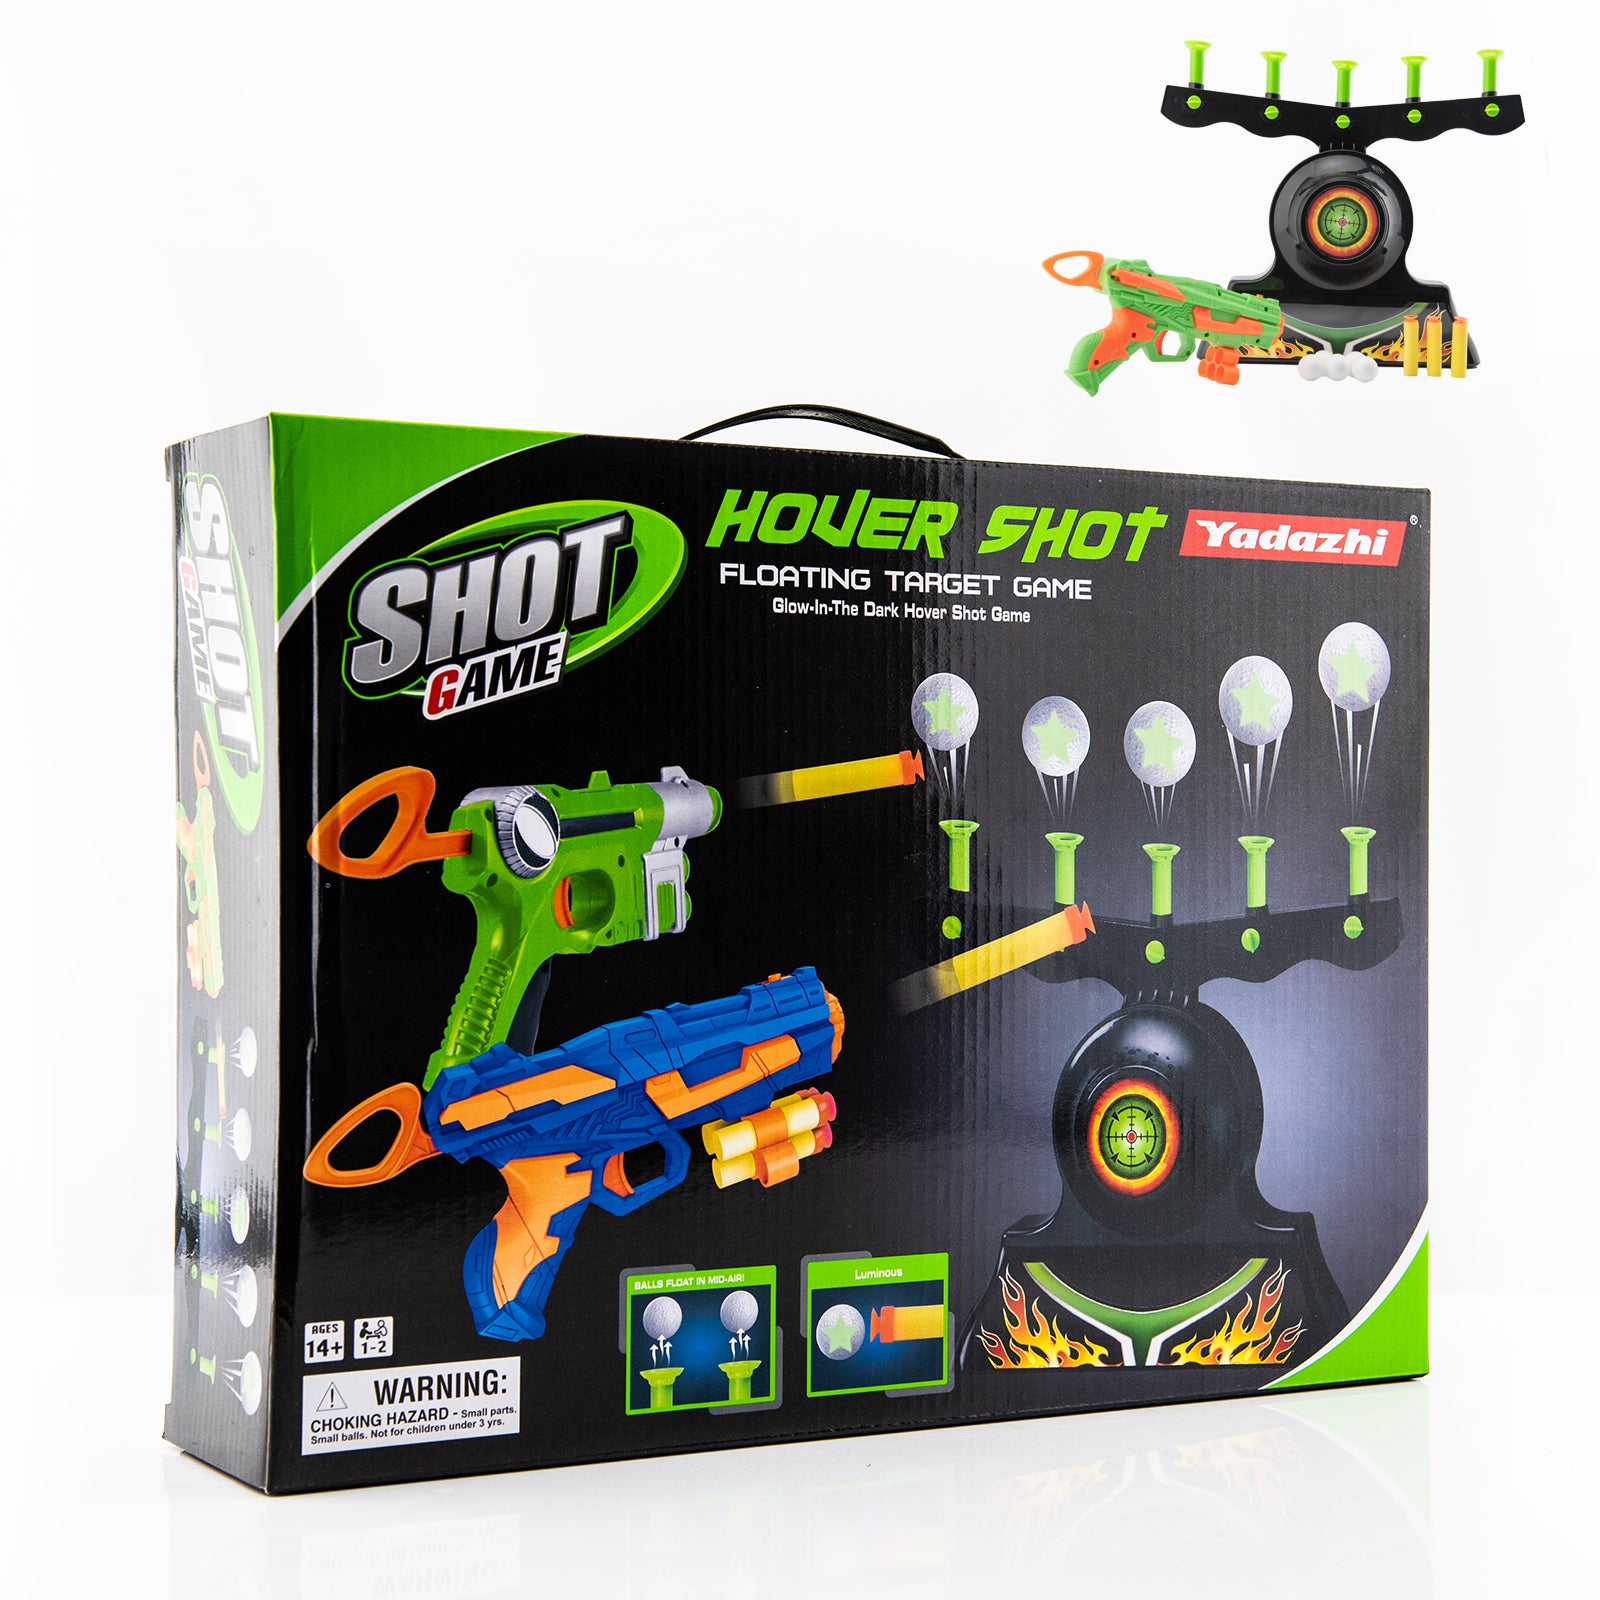 Astroshot Zero G Shooting Games for Kids